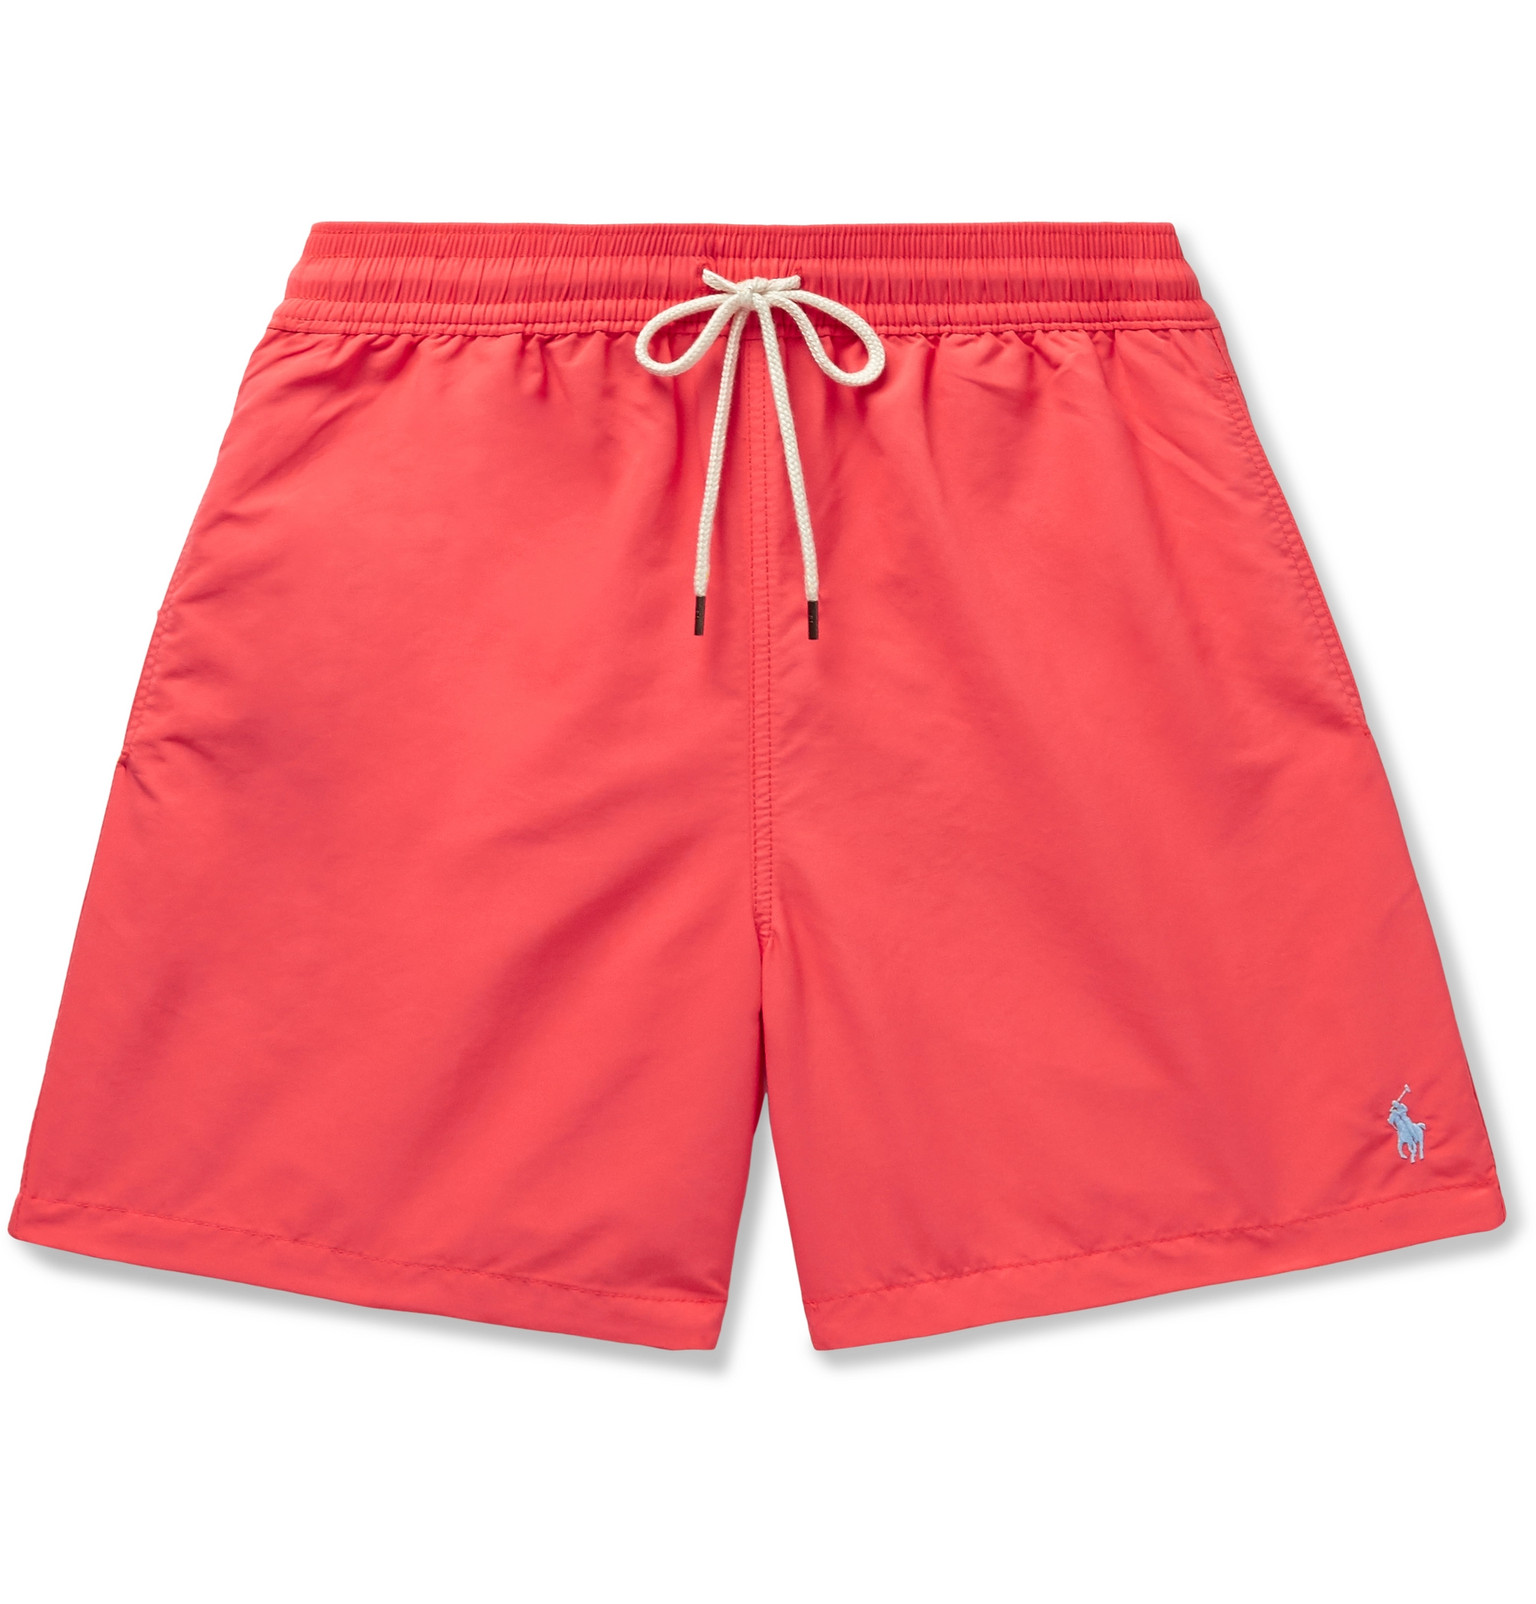 Polo Ralph Lauren - Traveler Mid-Length Swim Shorts - Men - Red | The ...